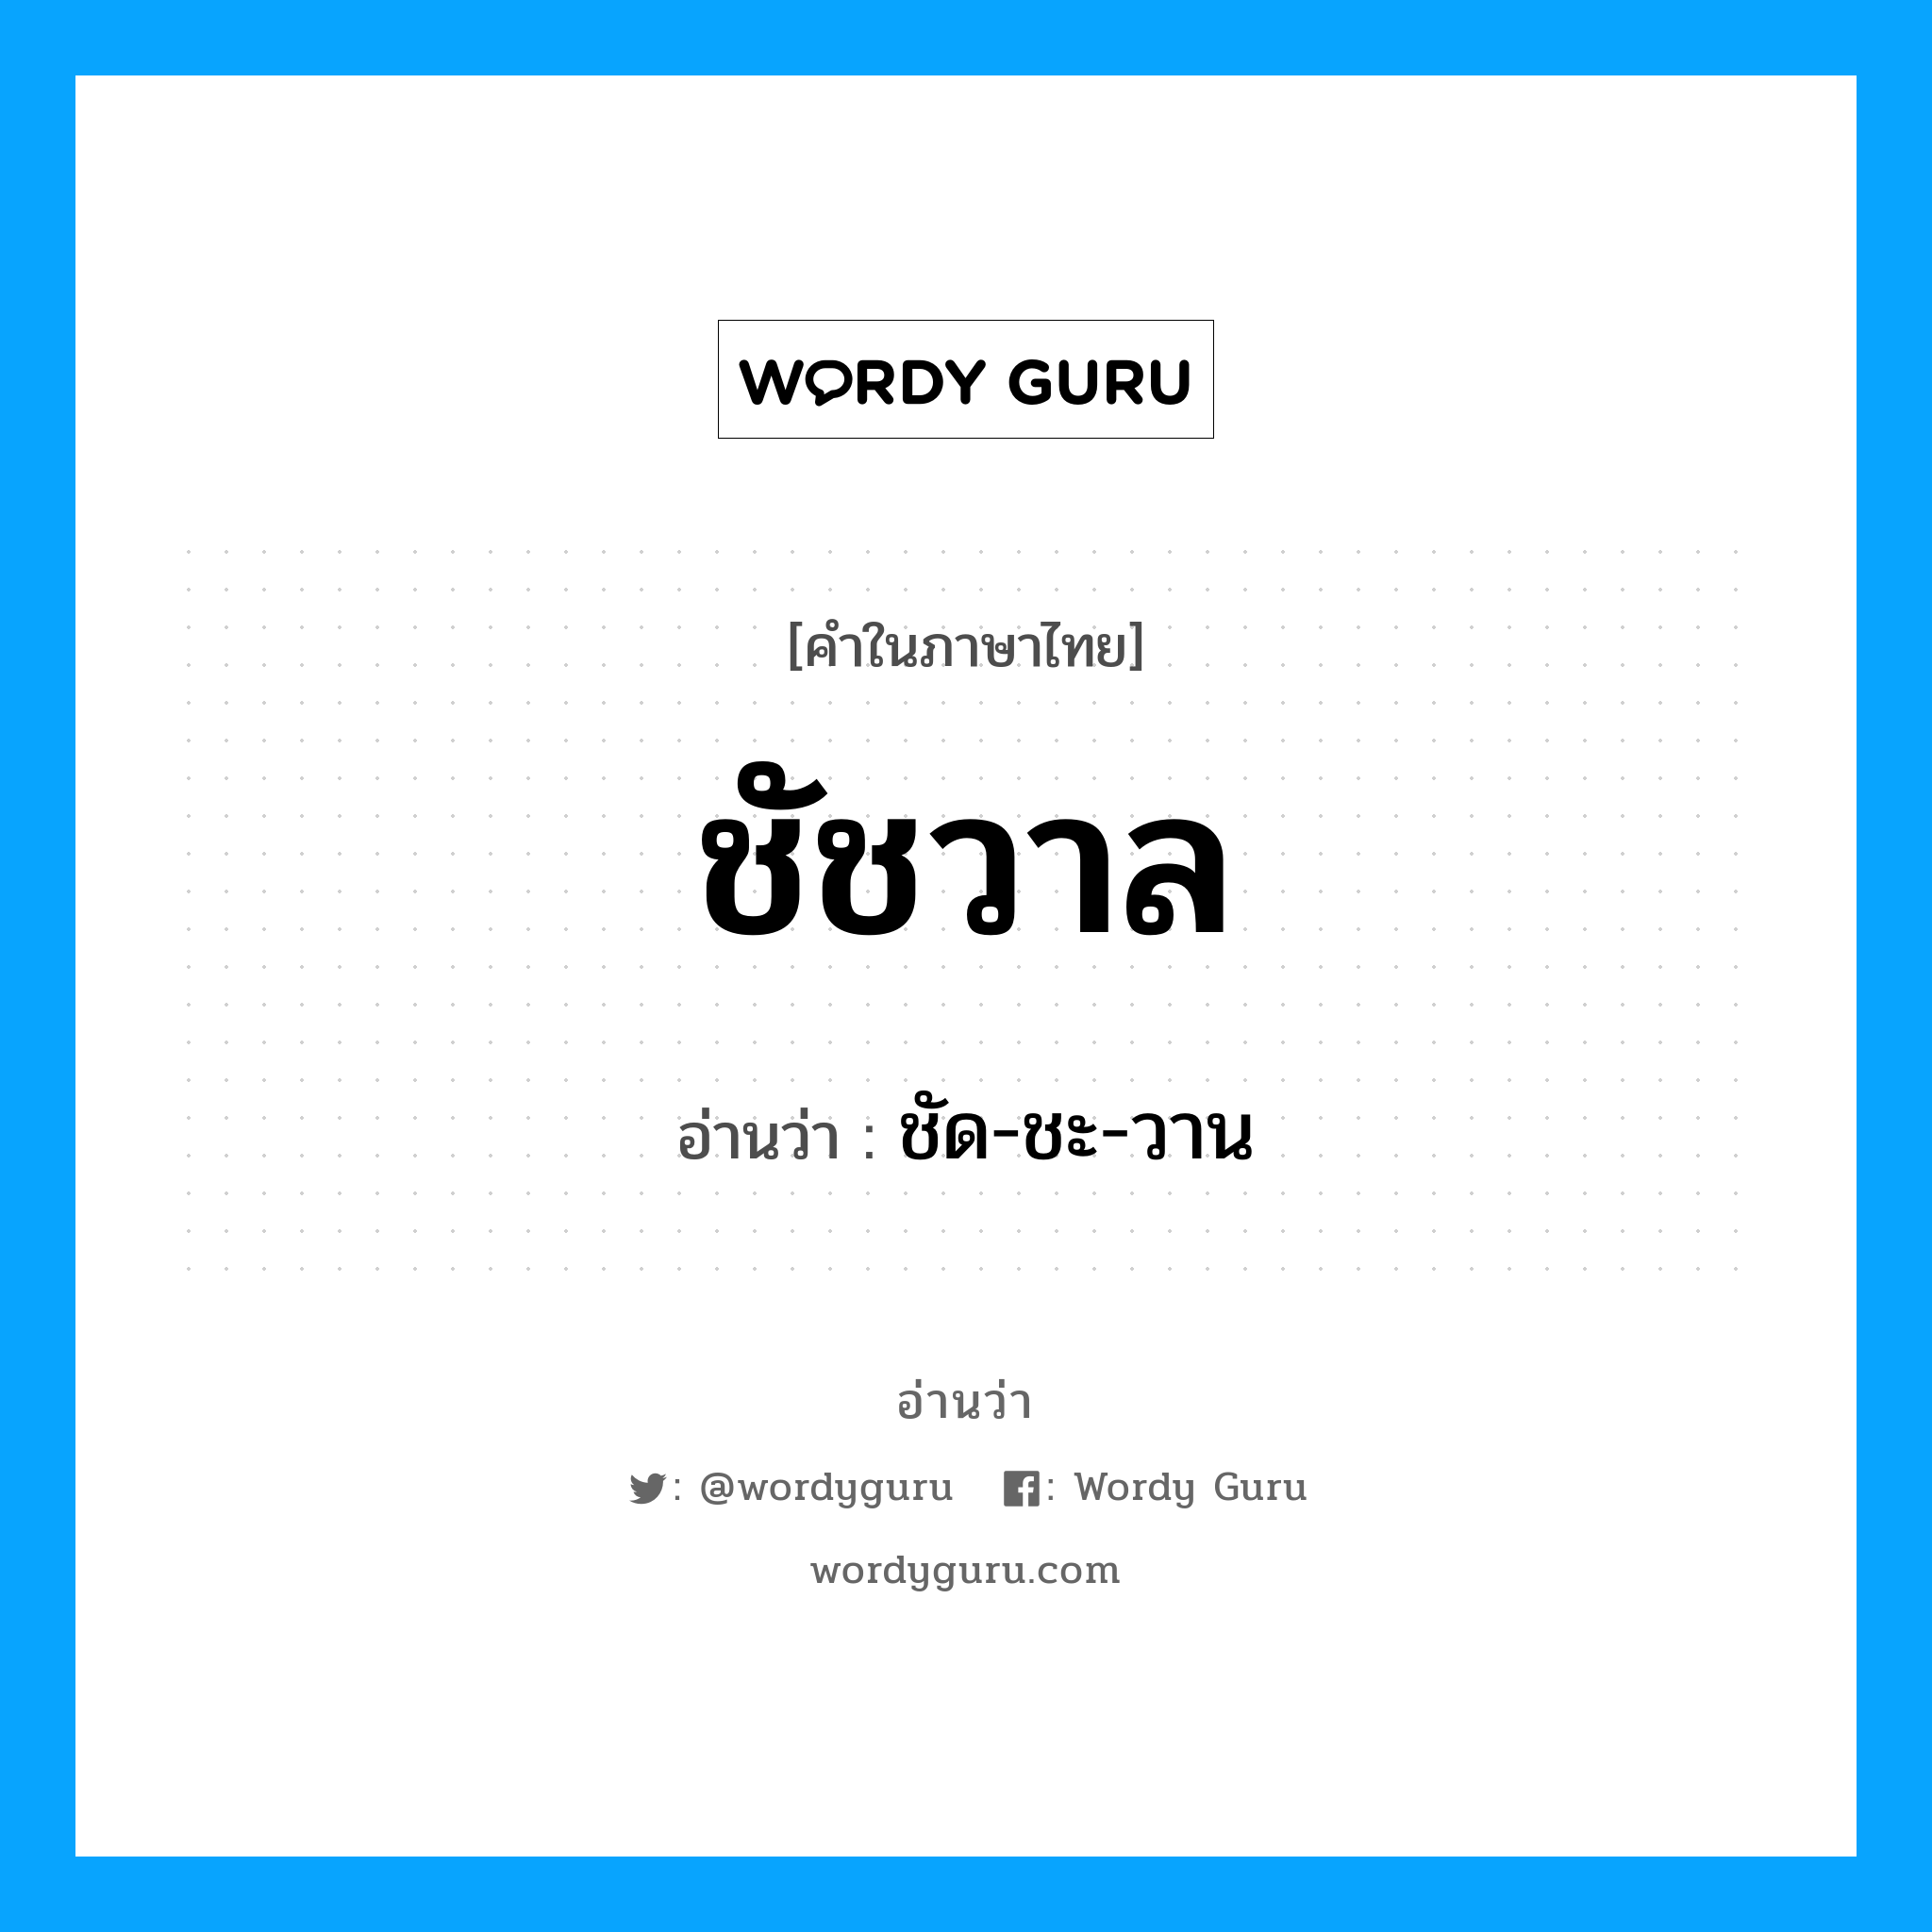 ชัด-ชะ-วาน เป็นคำอ่านของคำไหน?, คำในภาษาไทย ชัด-ชะ-วาน อ่านว่า ชัชวาล